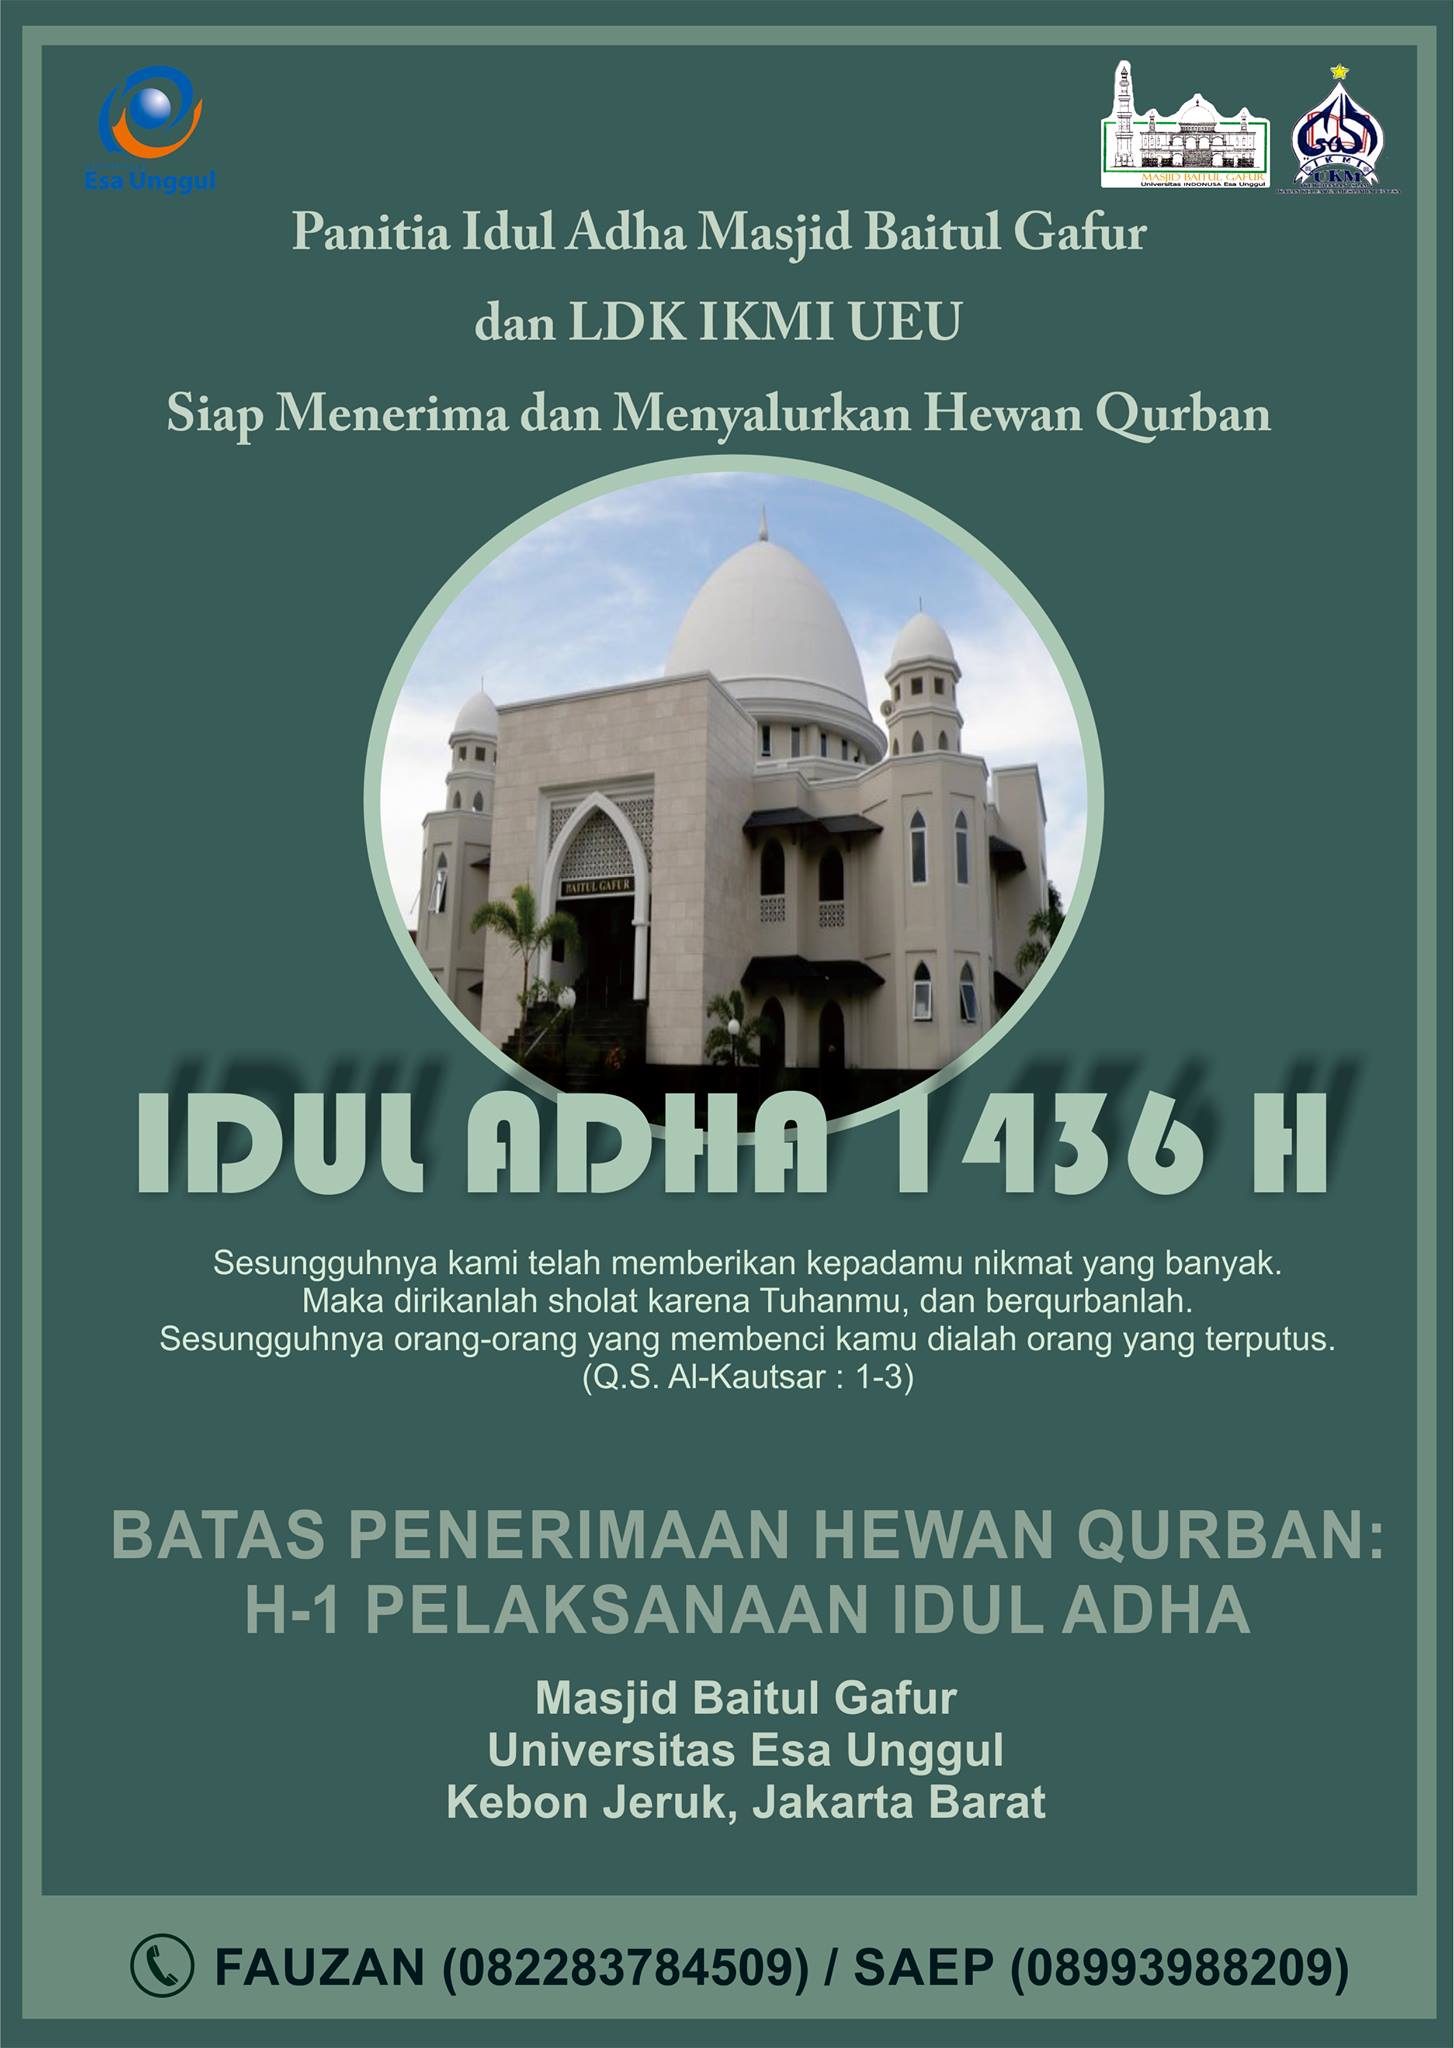 830 Koleksi Gambar Masjid Dan Hewan Qurban Gratis